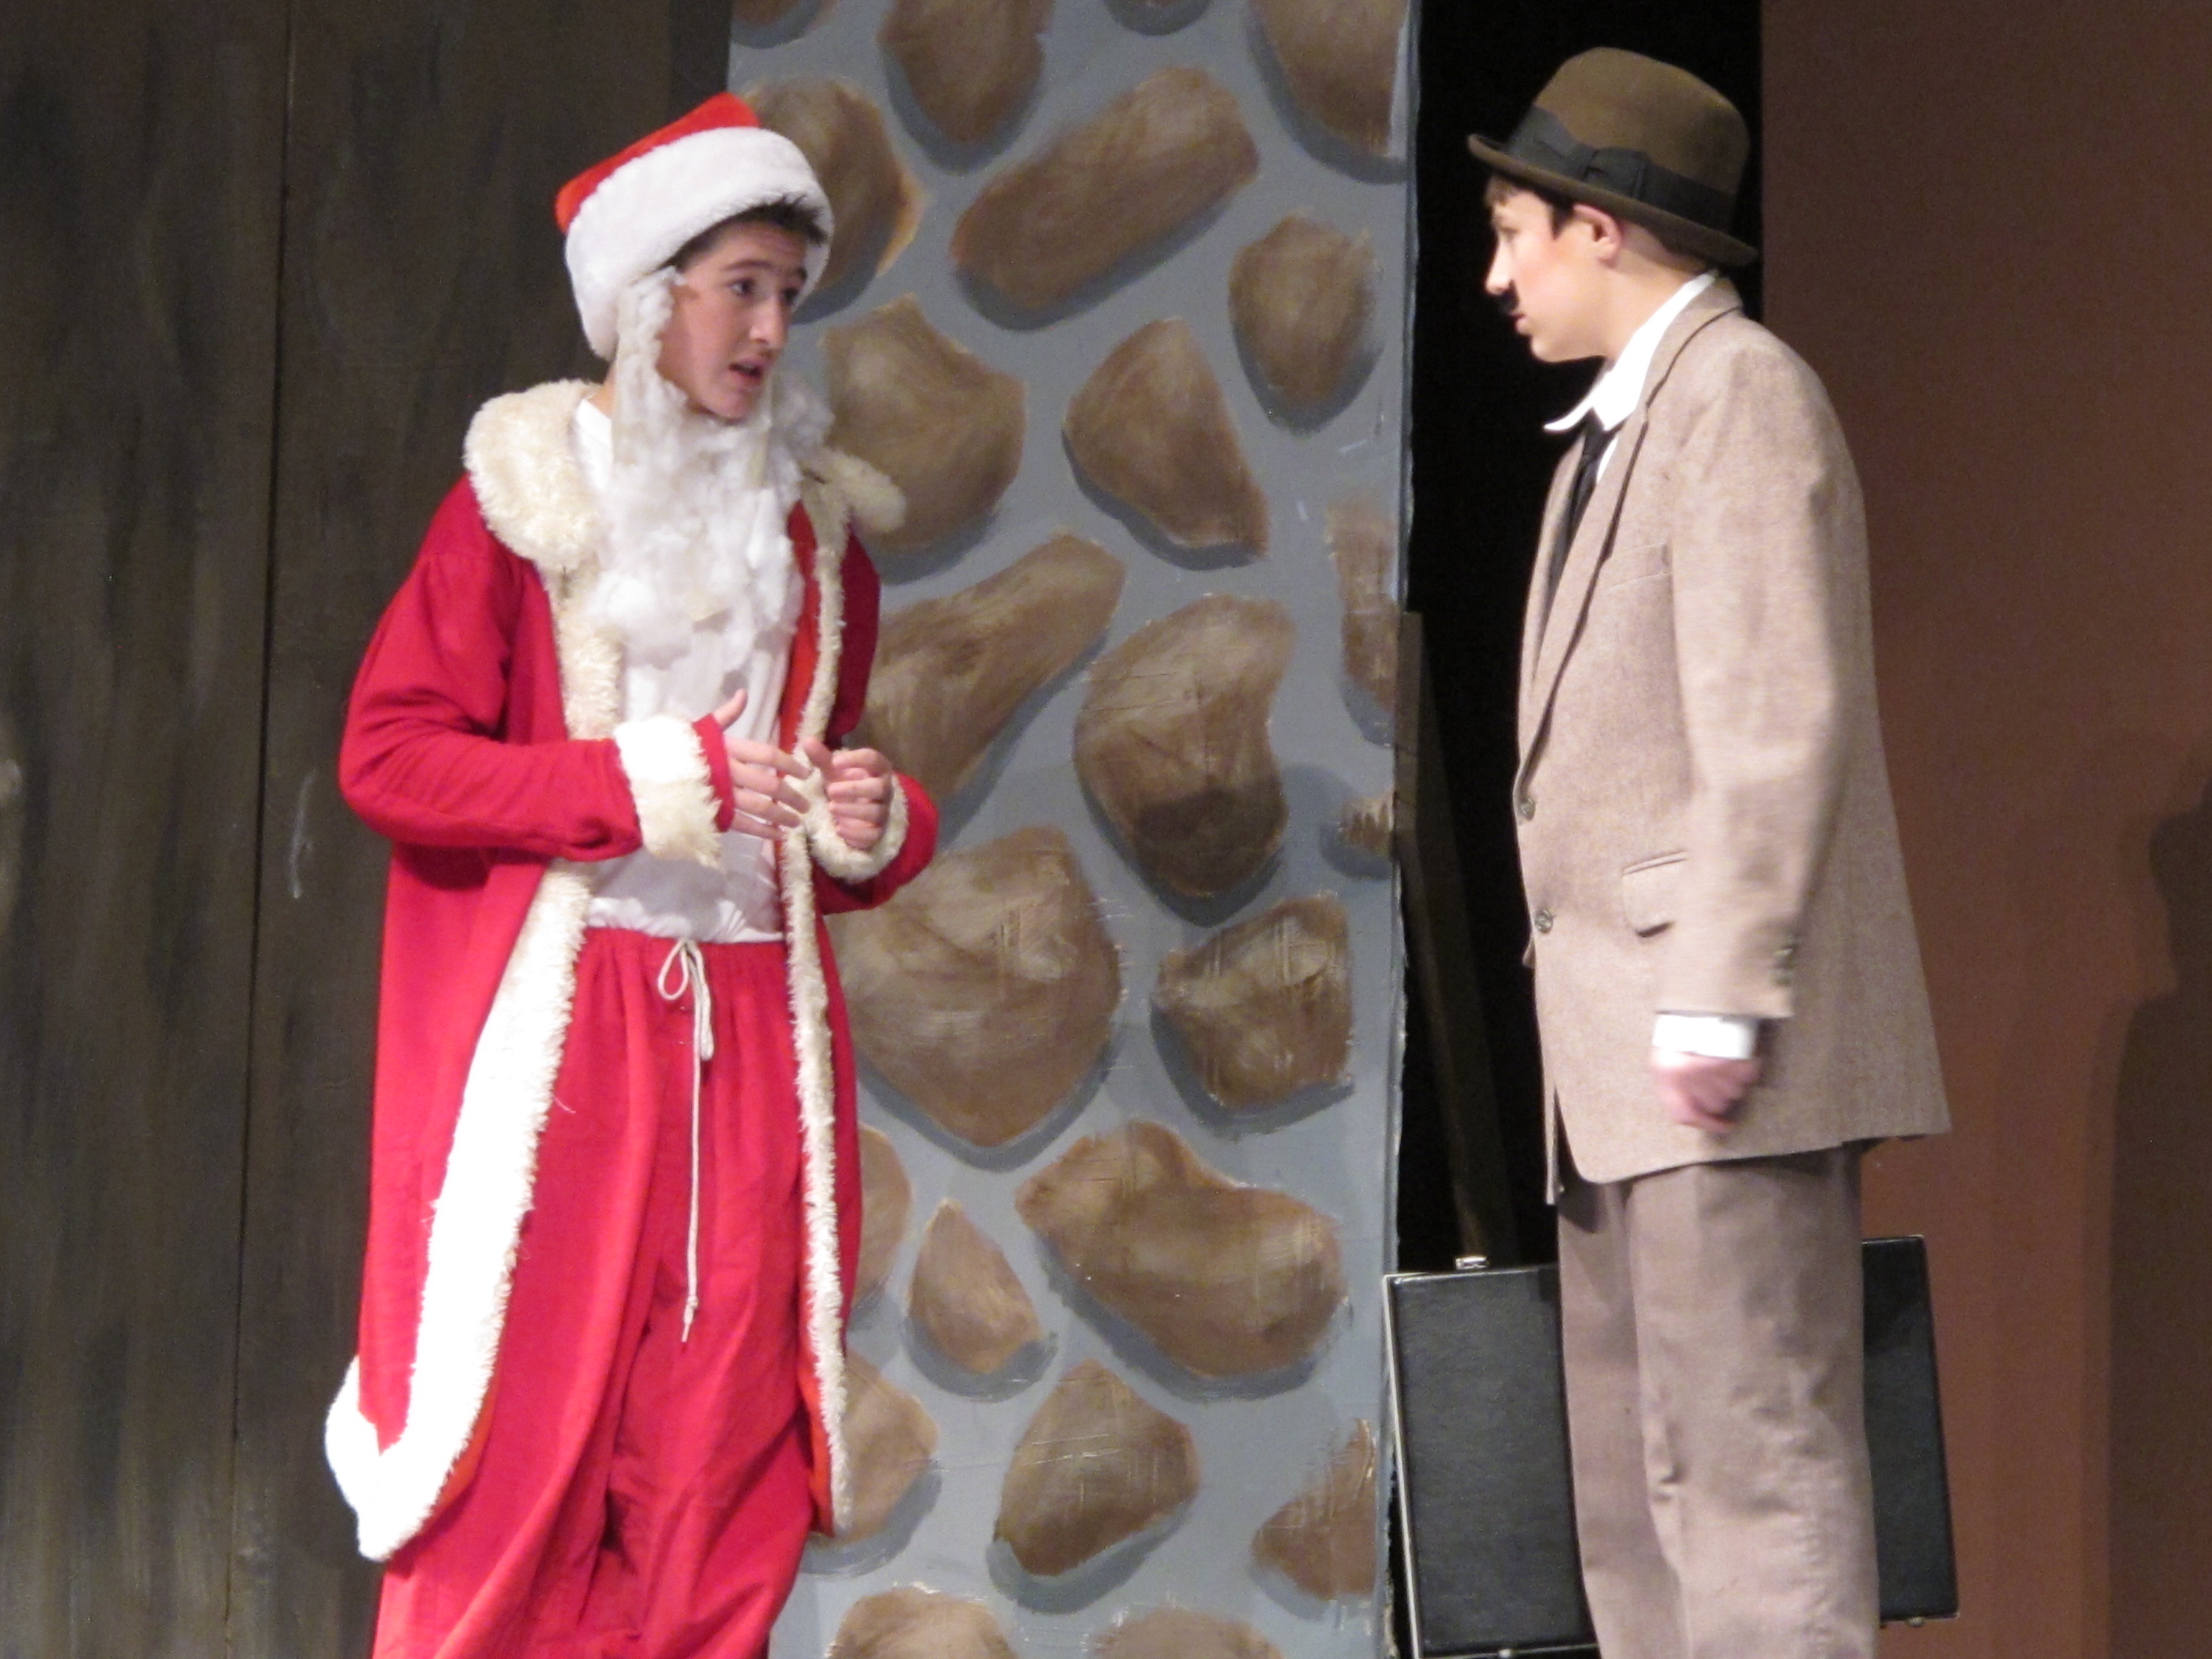 Caleb performing as Scraggly Santa in Yes, Virginia